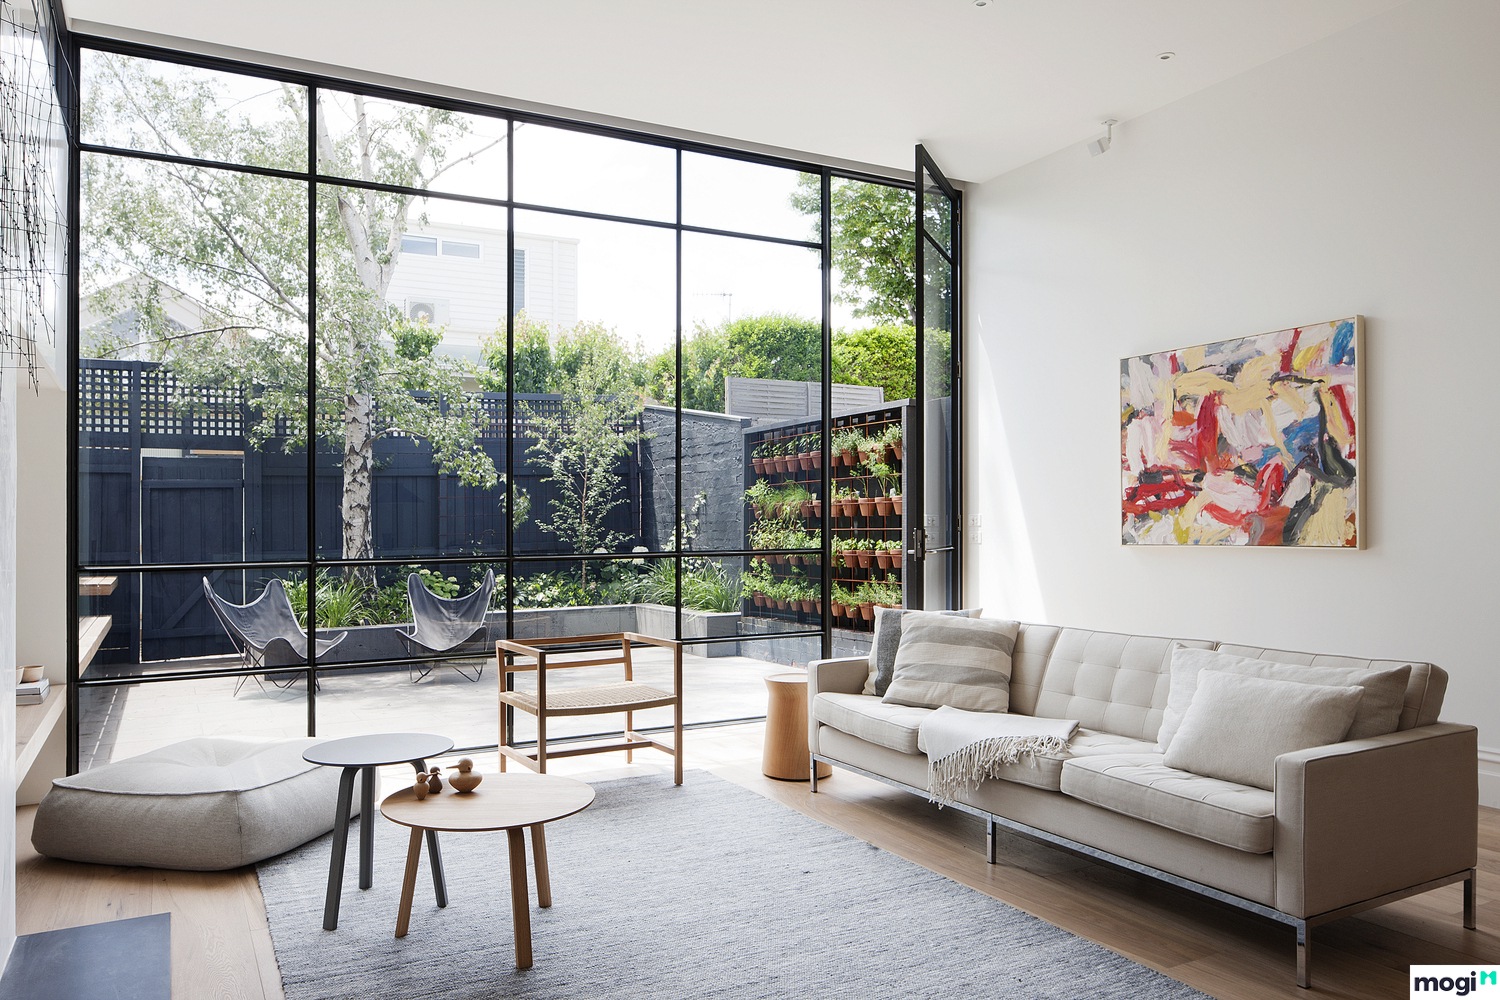 Thiết kế nội thất phòng khách cho nhà ống hiện đại năm 2018 | Mogi.vn